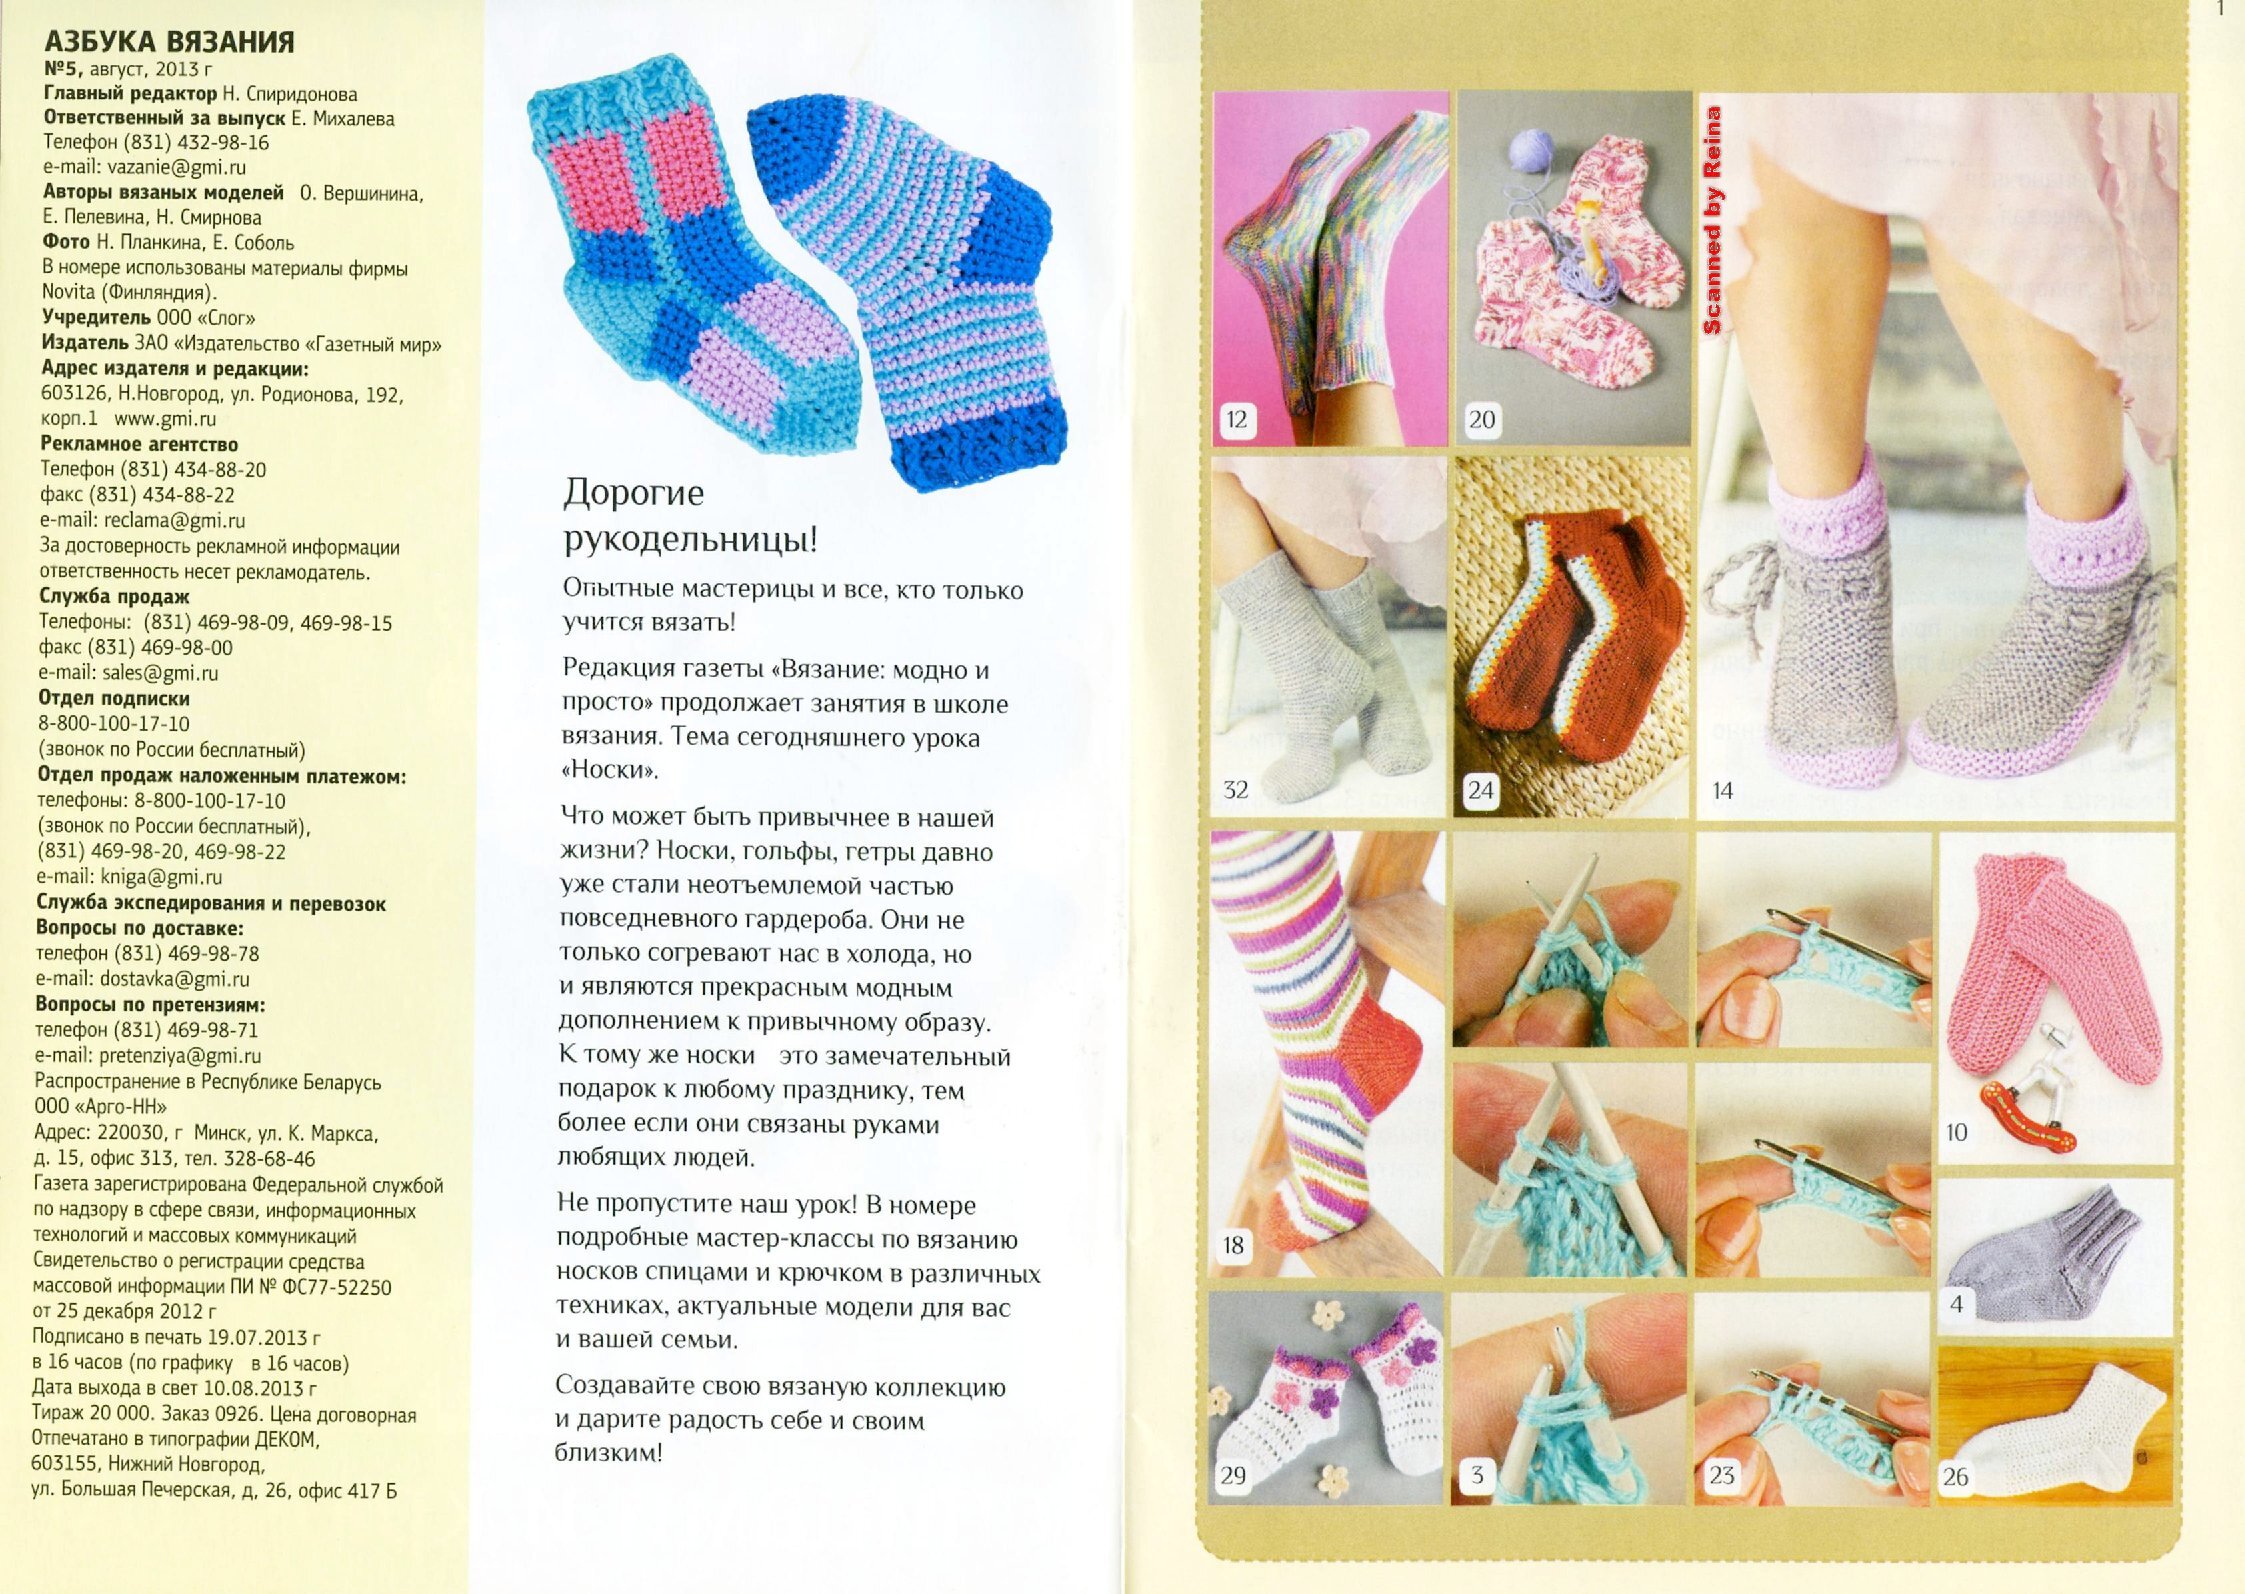 Детские носочки спицами схемы и описание простые и красивые с фото пошагово